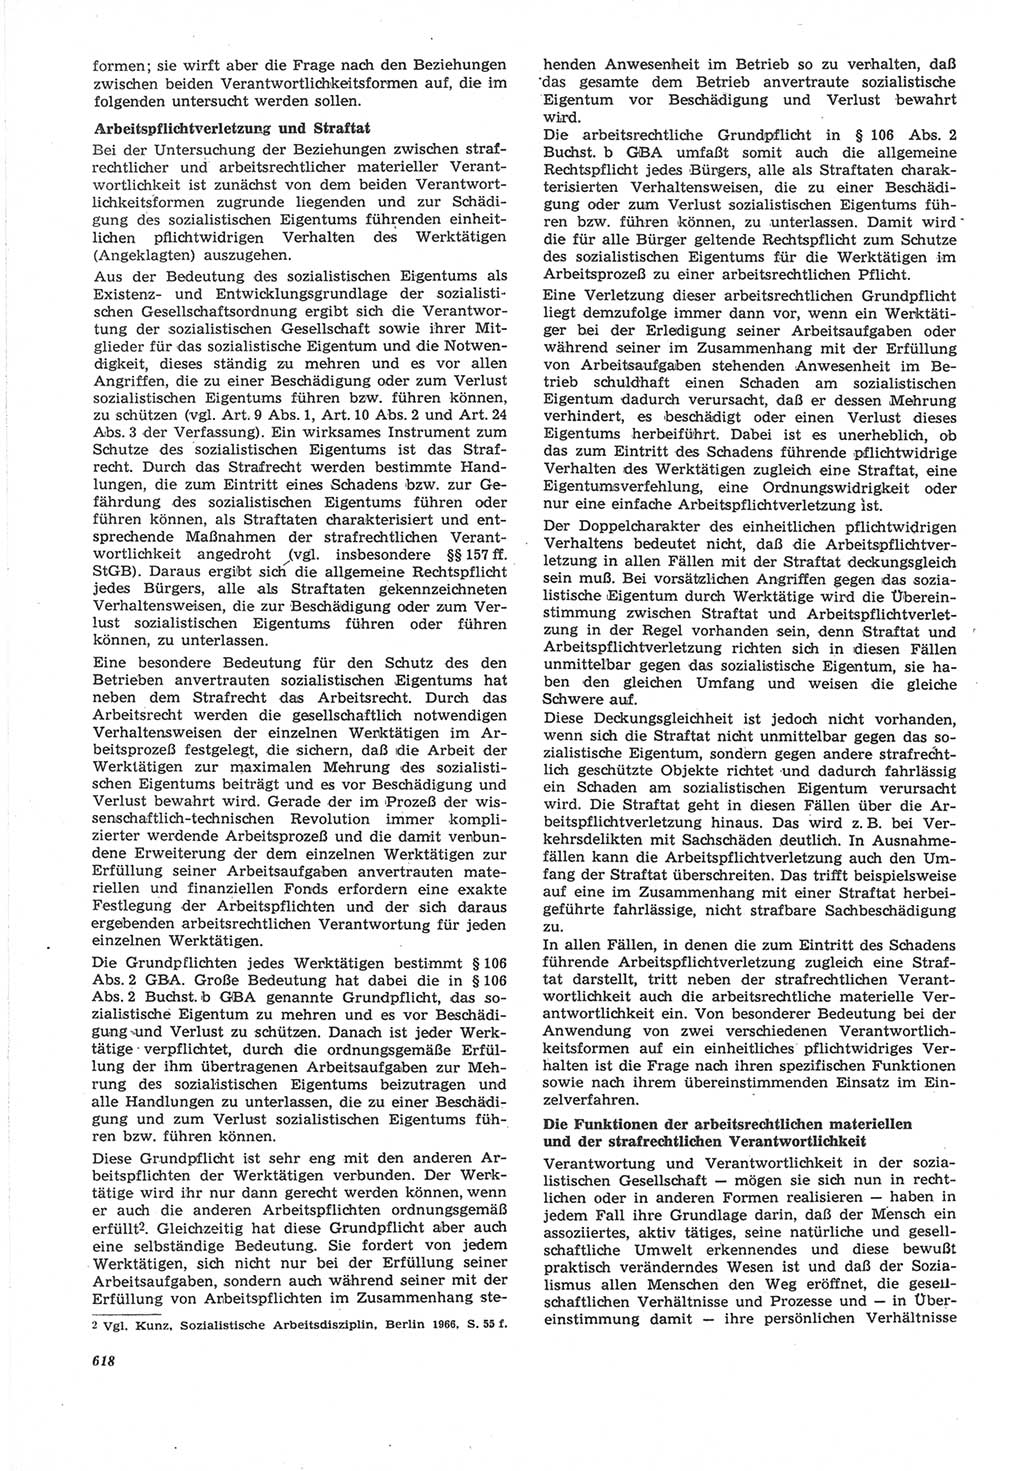 Neue Justiz (NJ), Zeitschrift für Recht und Rechtswissenschaft [Deutsche Demokratische Republik (DDR)], 22. Jahrgang 1968, Seite 618 (NJ DDR 1968, S. 618)